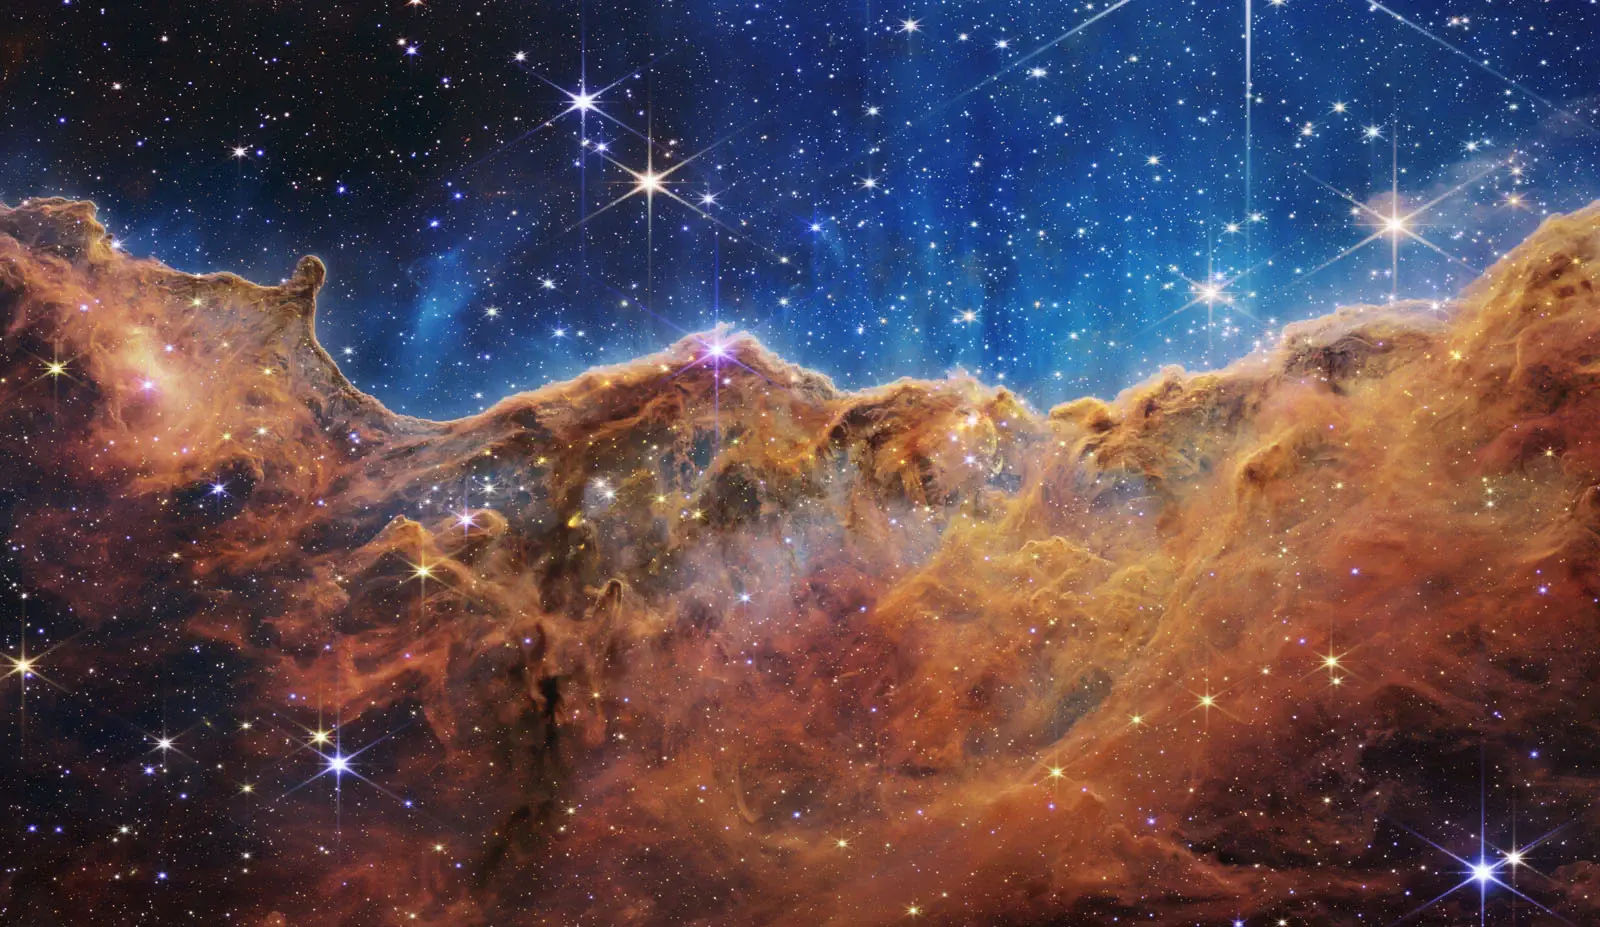 10 bức ảnh đẹp nhất được kính thiên văn không gian James Webb chụp lại